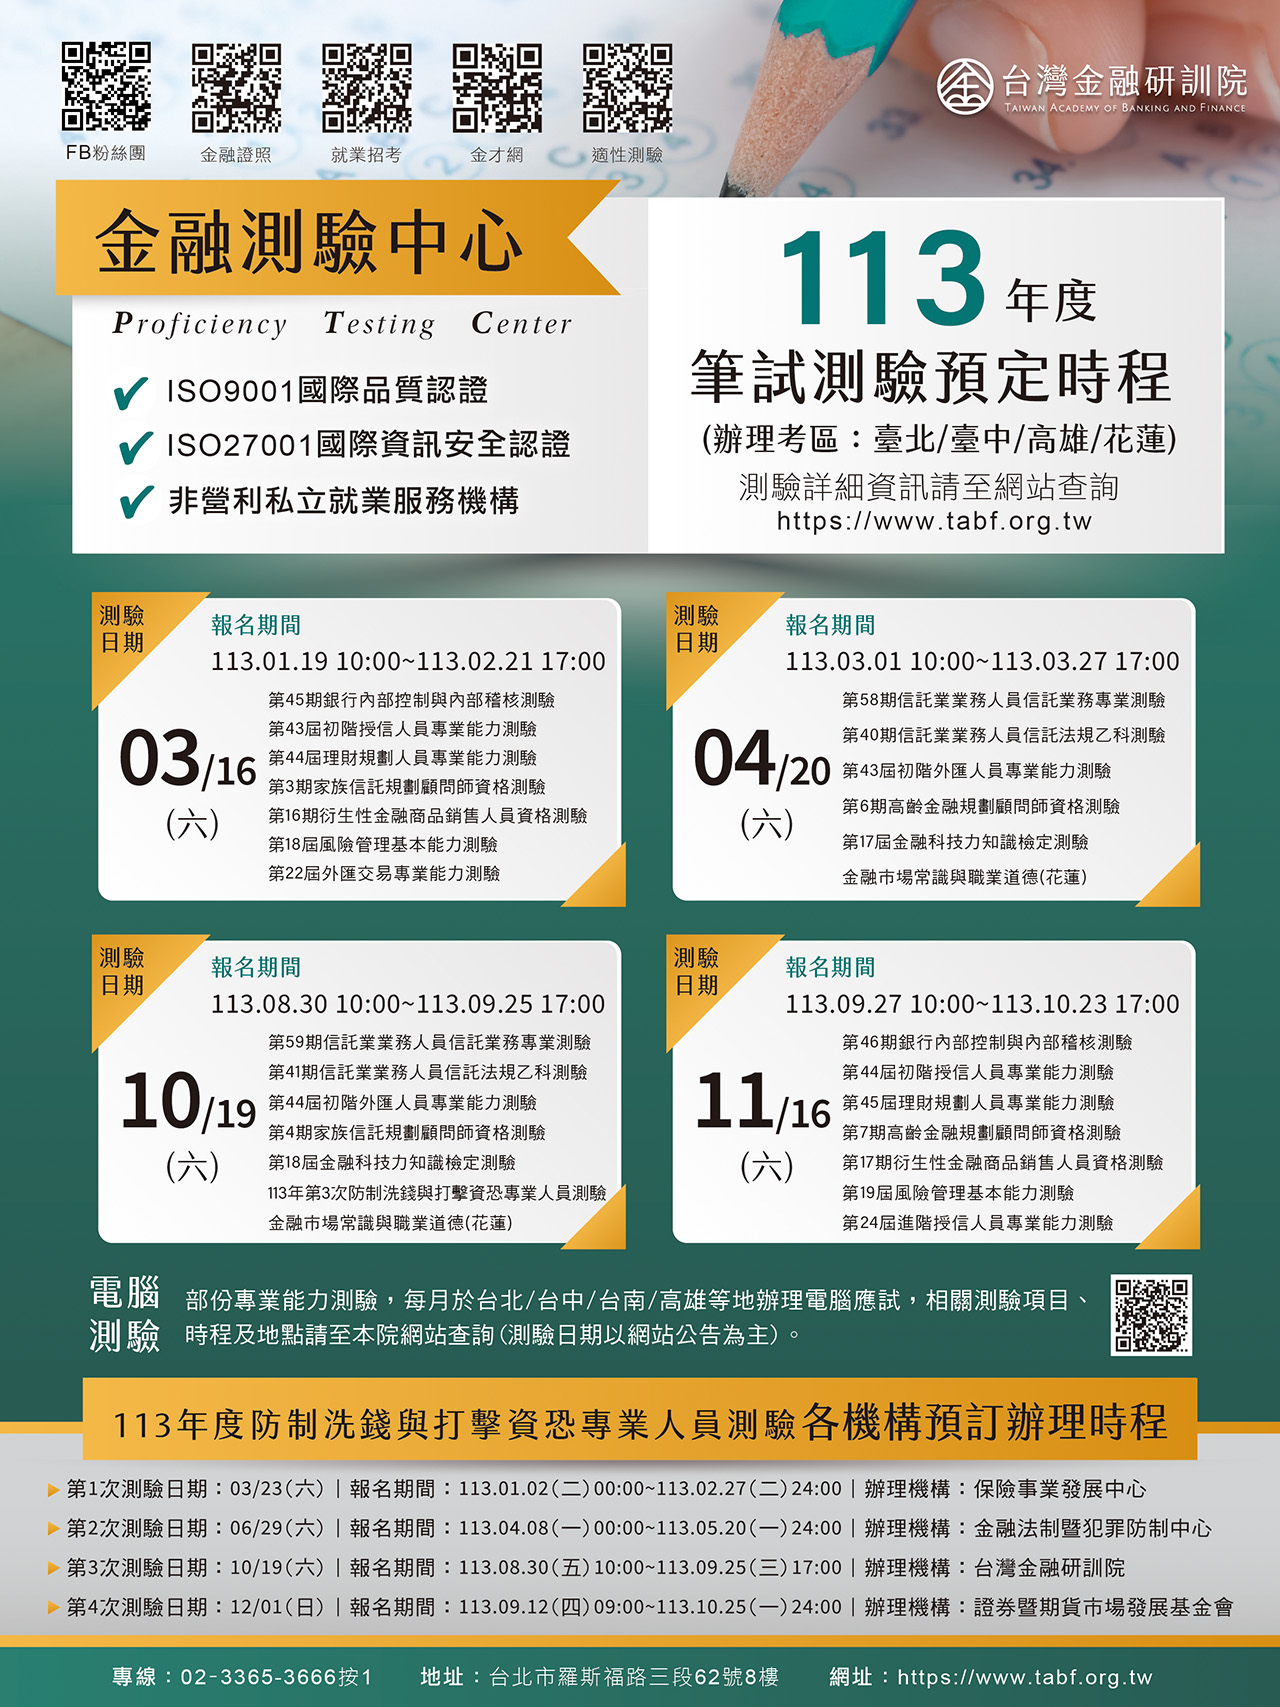 台湾金融研训院113年度笔试测验预定时程